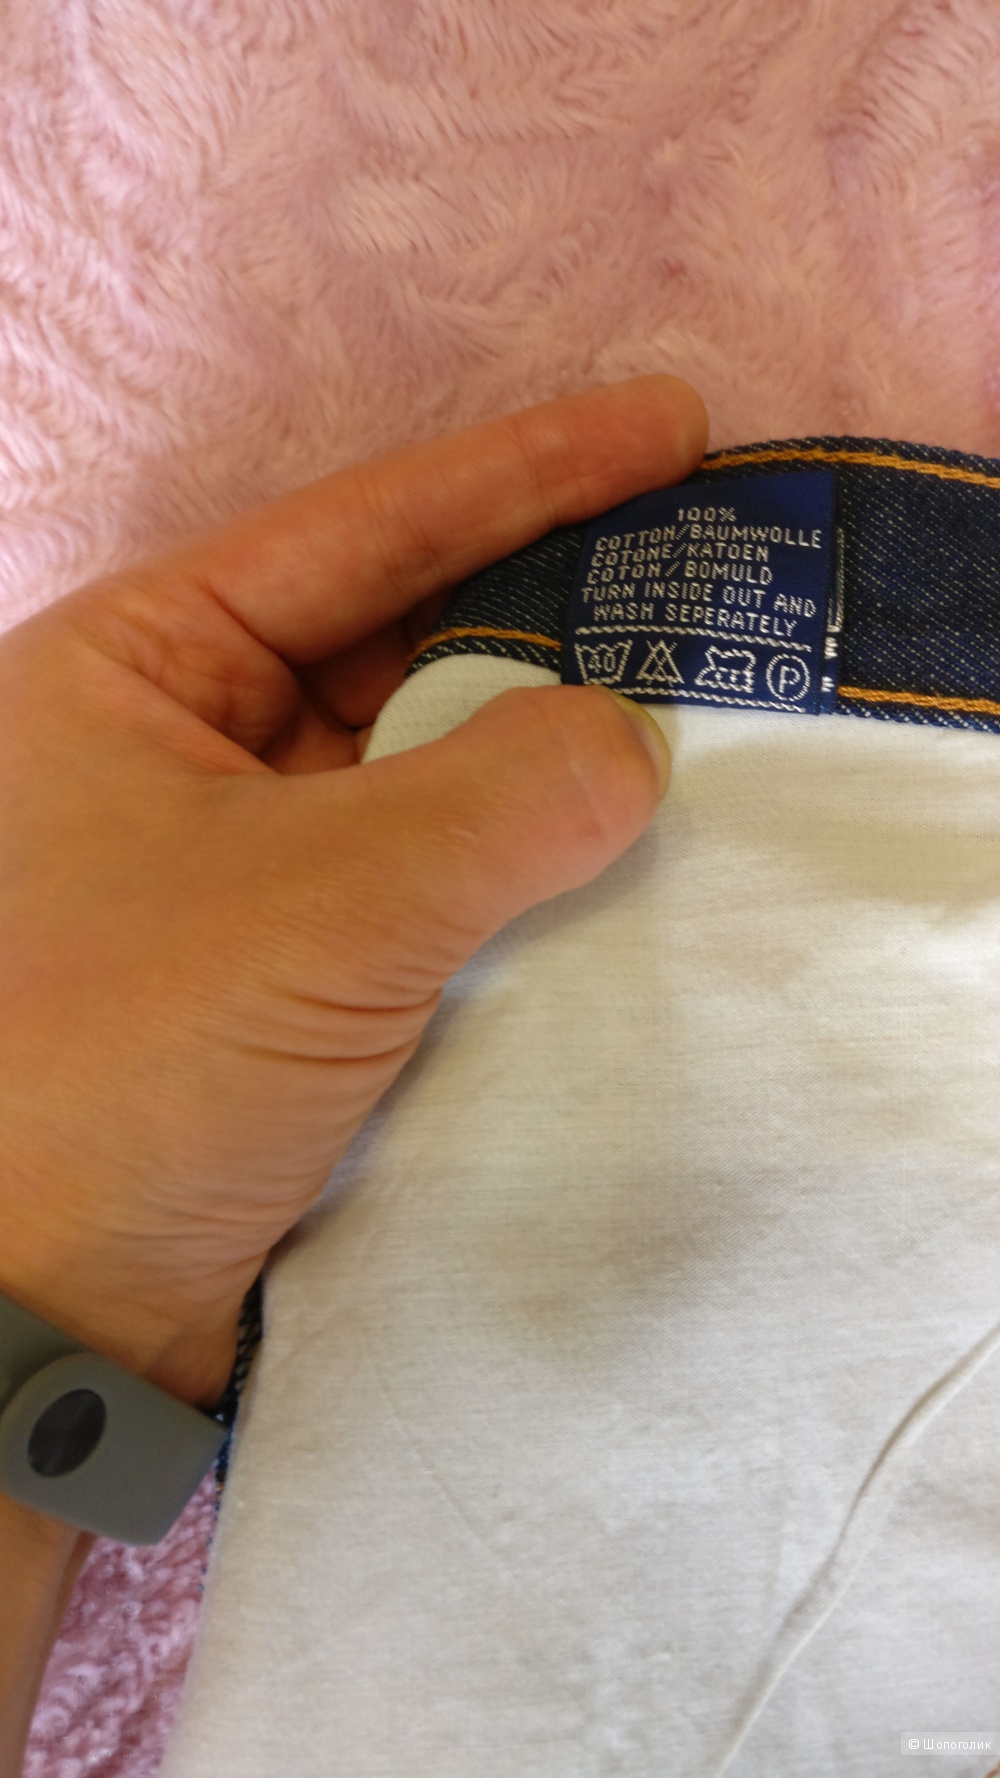 Джинсовая юбка Montana оригинал, размер  XL винтаж